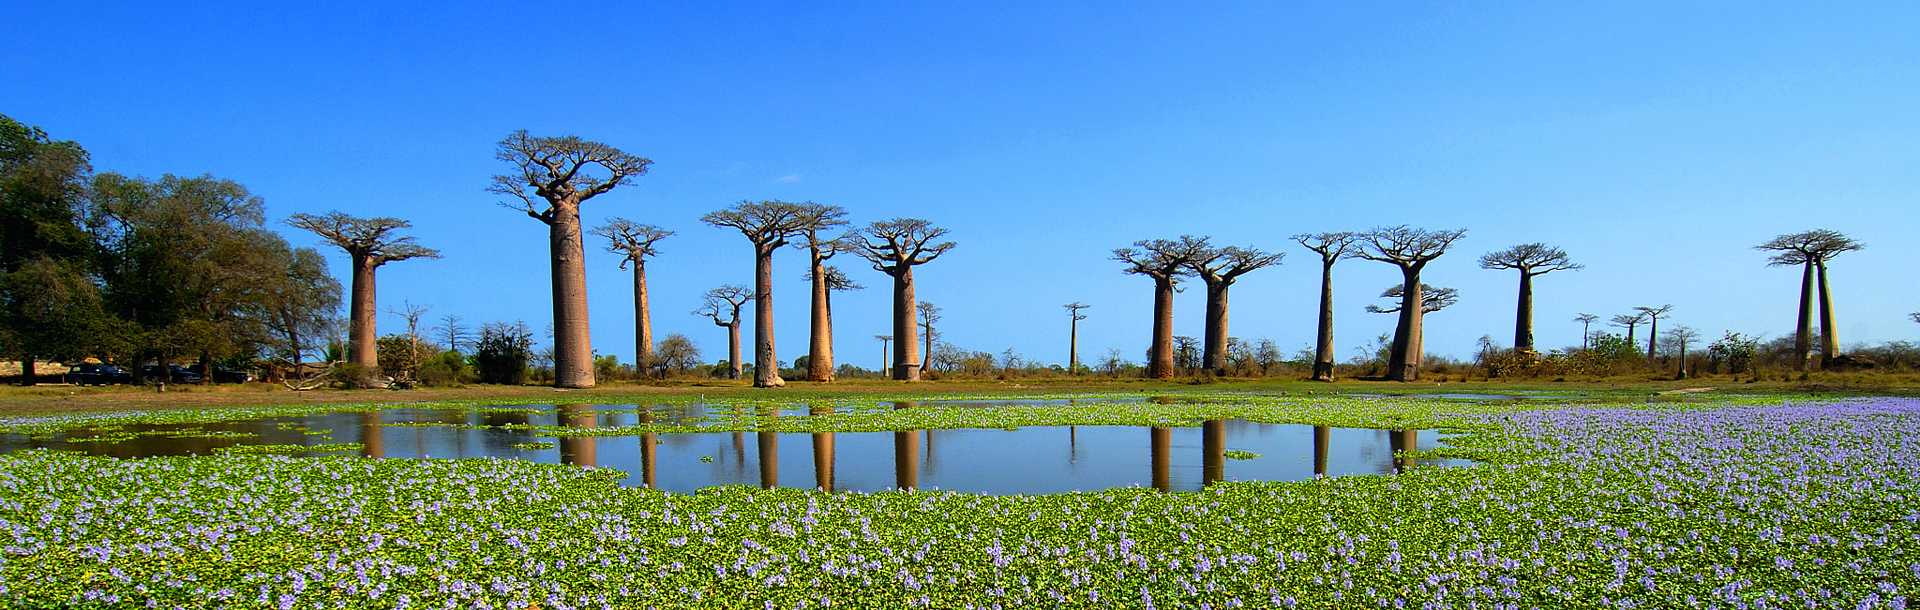 Baobab trees in Madagascar.